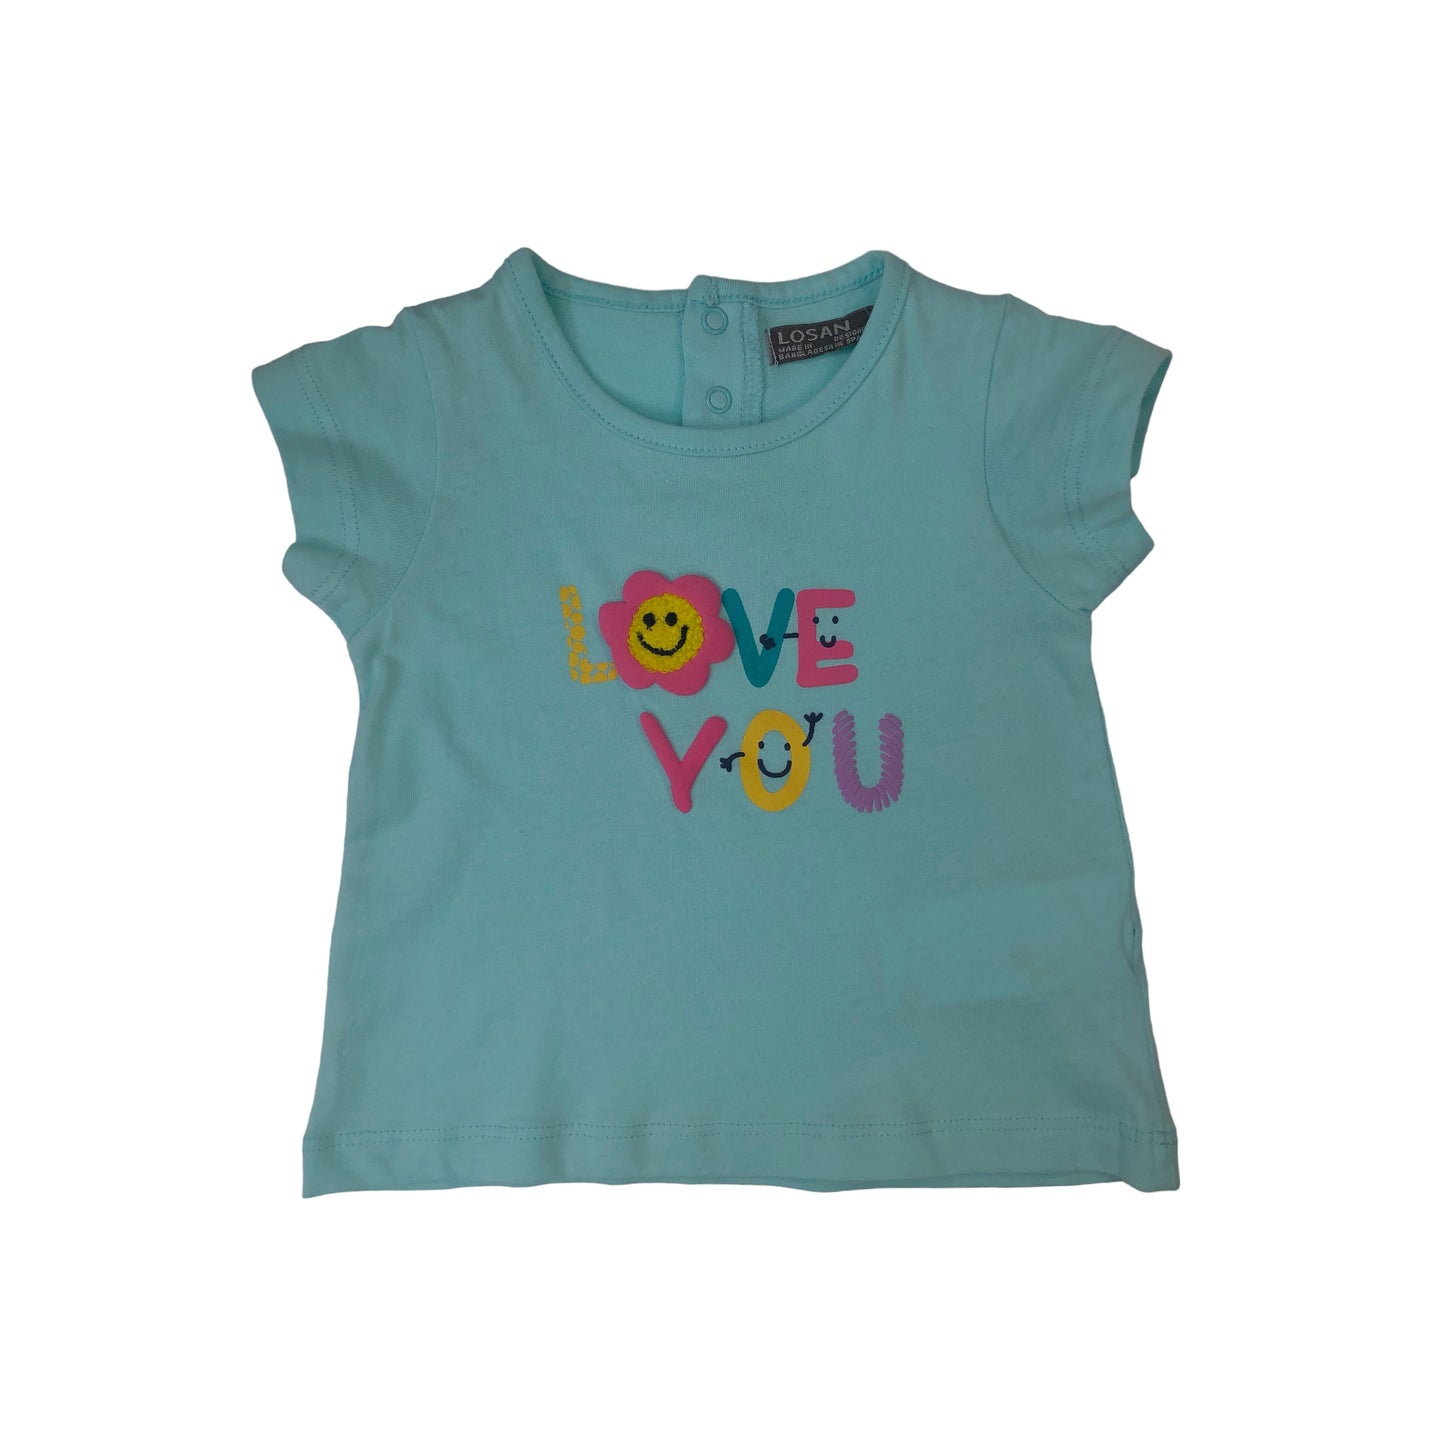 Conjunto de camiseta manga corta "LOVE YOU" y pantalón para bebé niña Losan